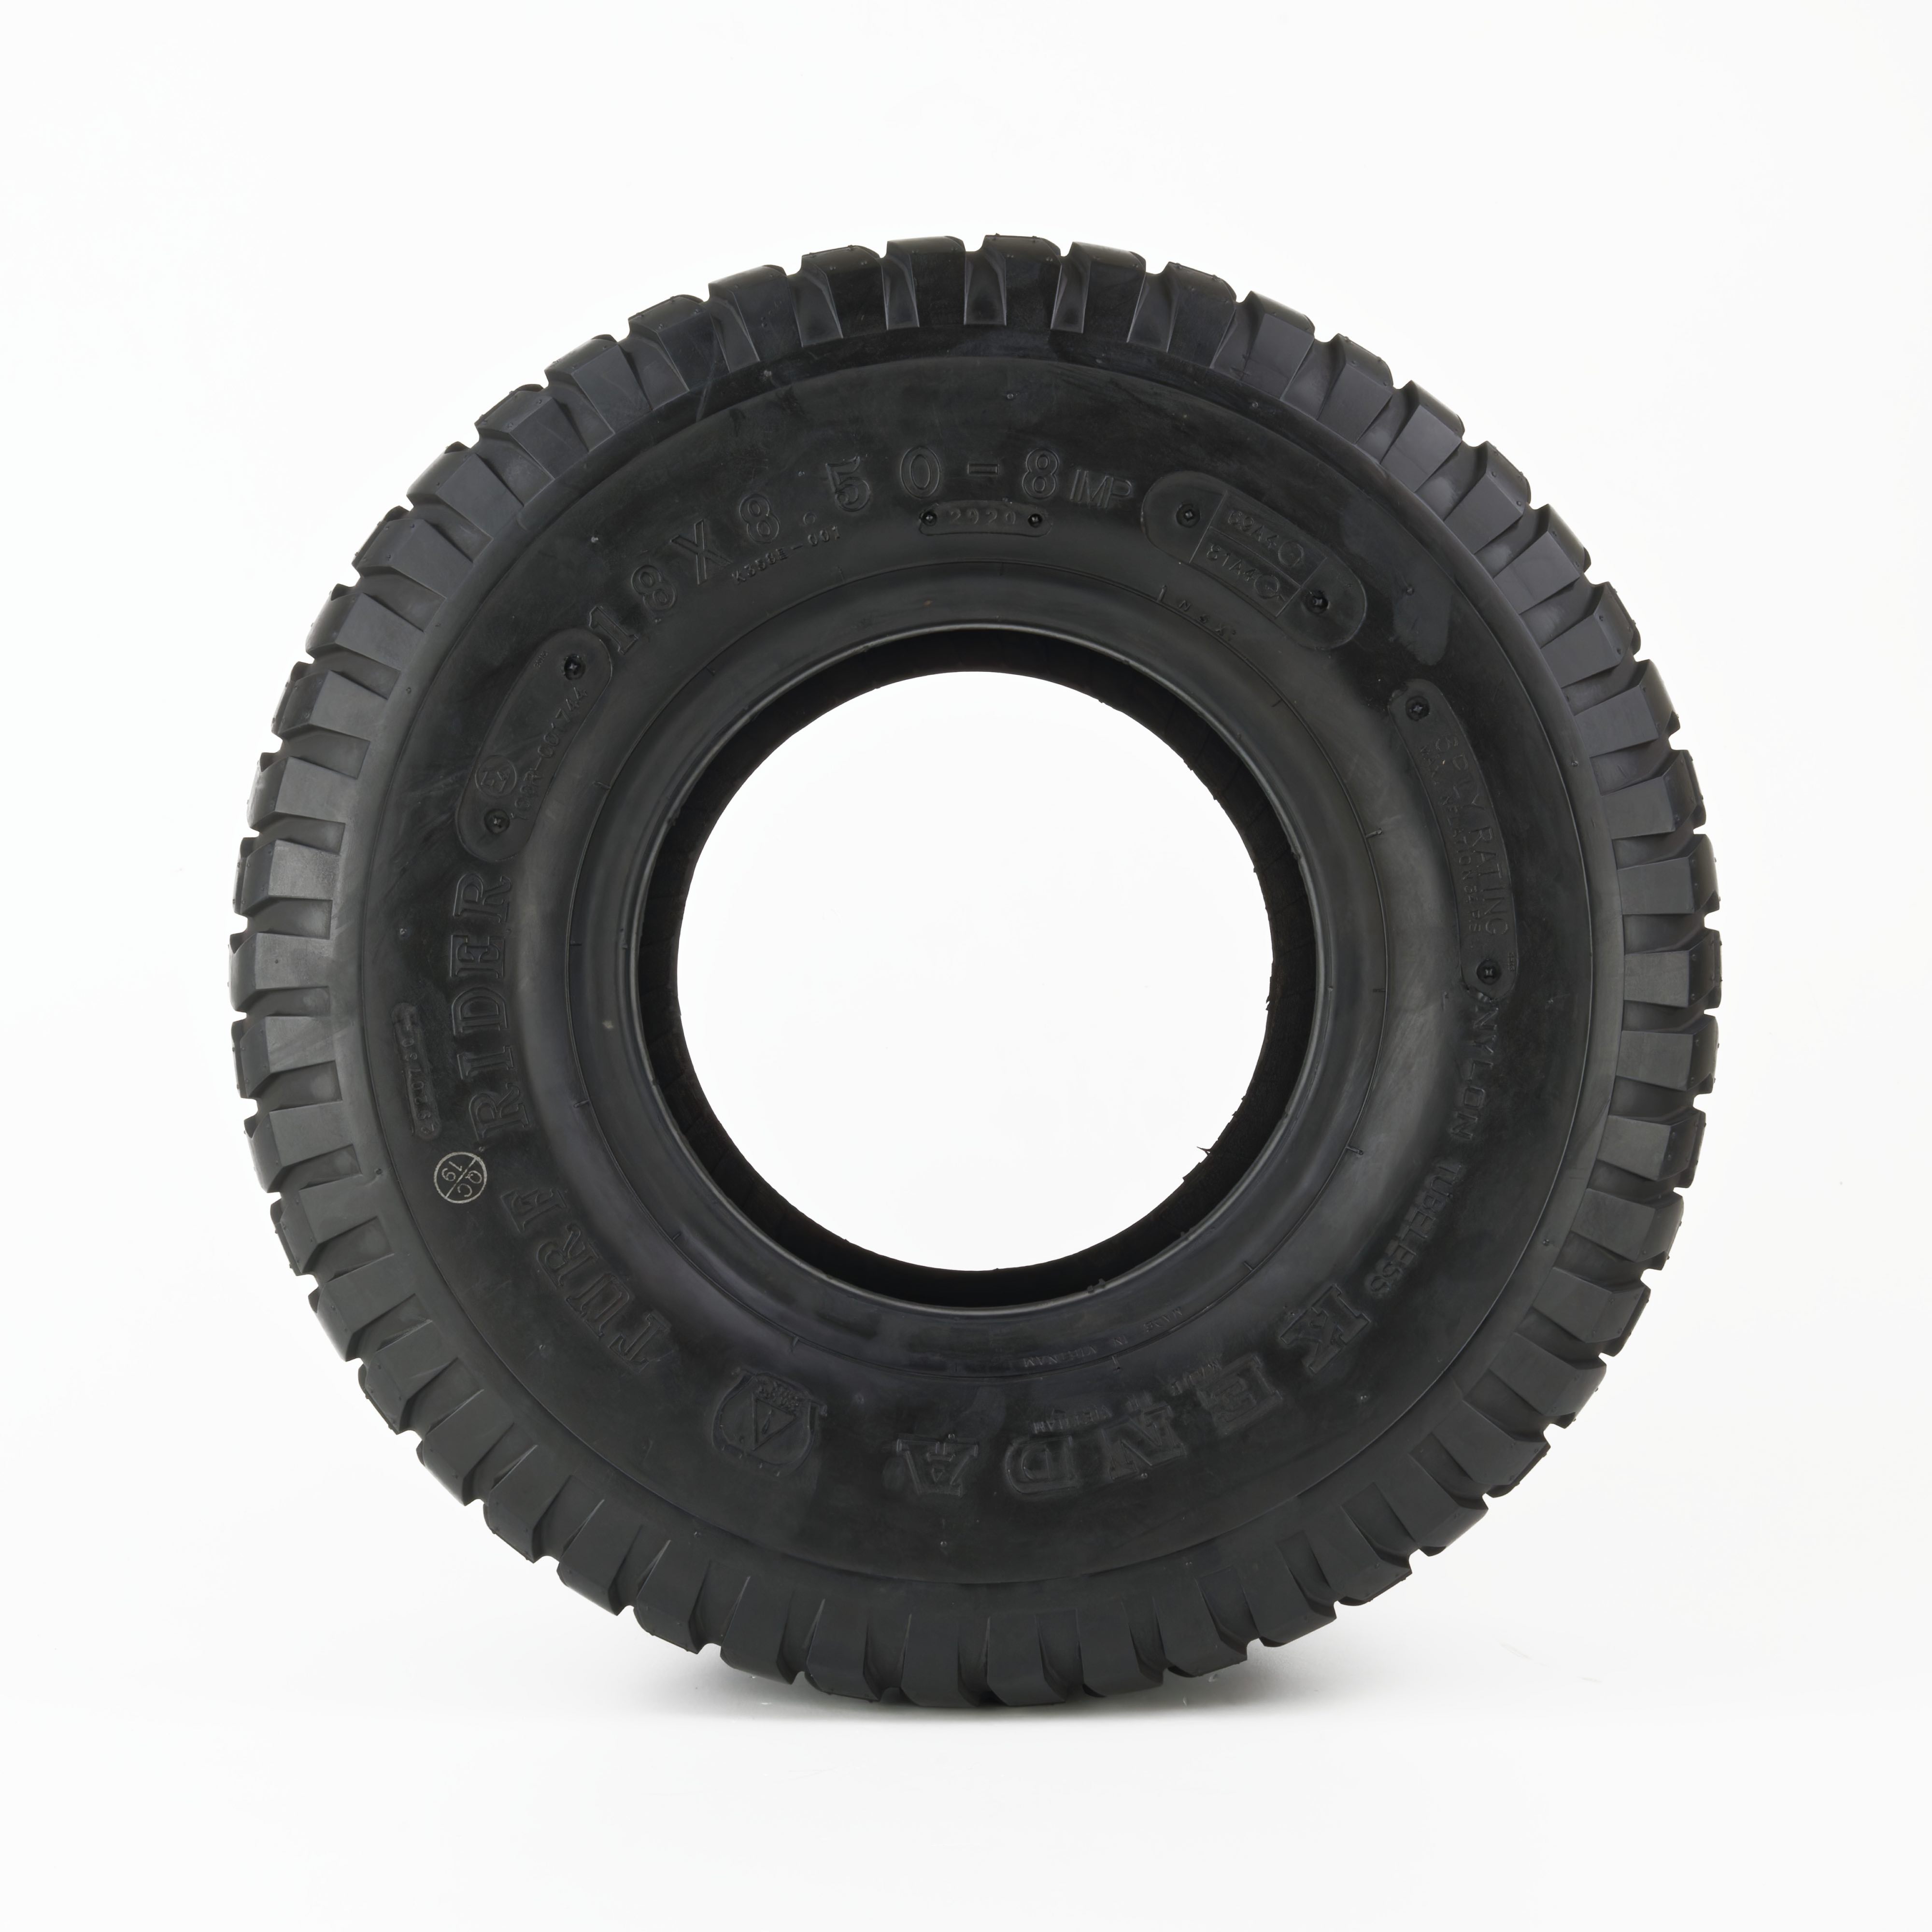 Rasentraktor Reifen 18x8.50-8, 6PR, TL, Kenda K358 Turf Rider - Seitenansicht